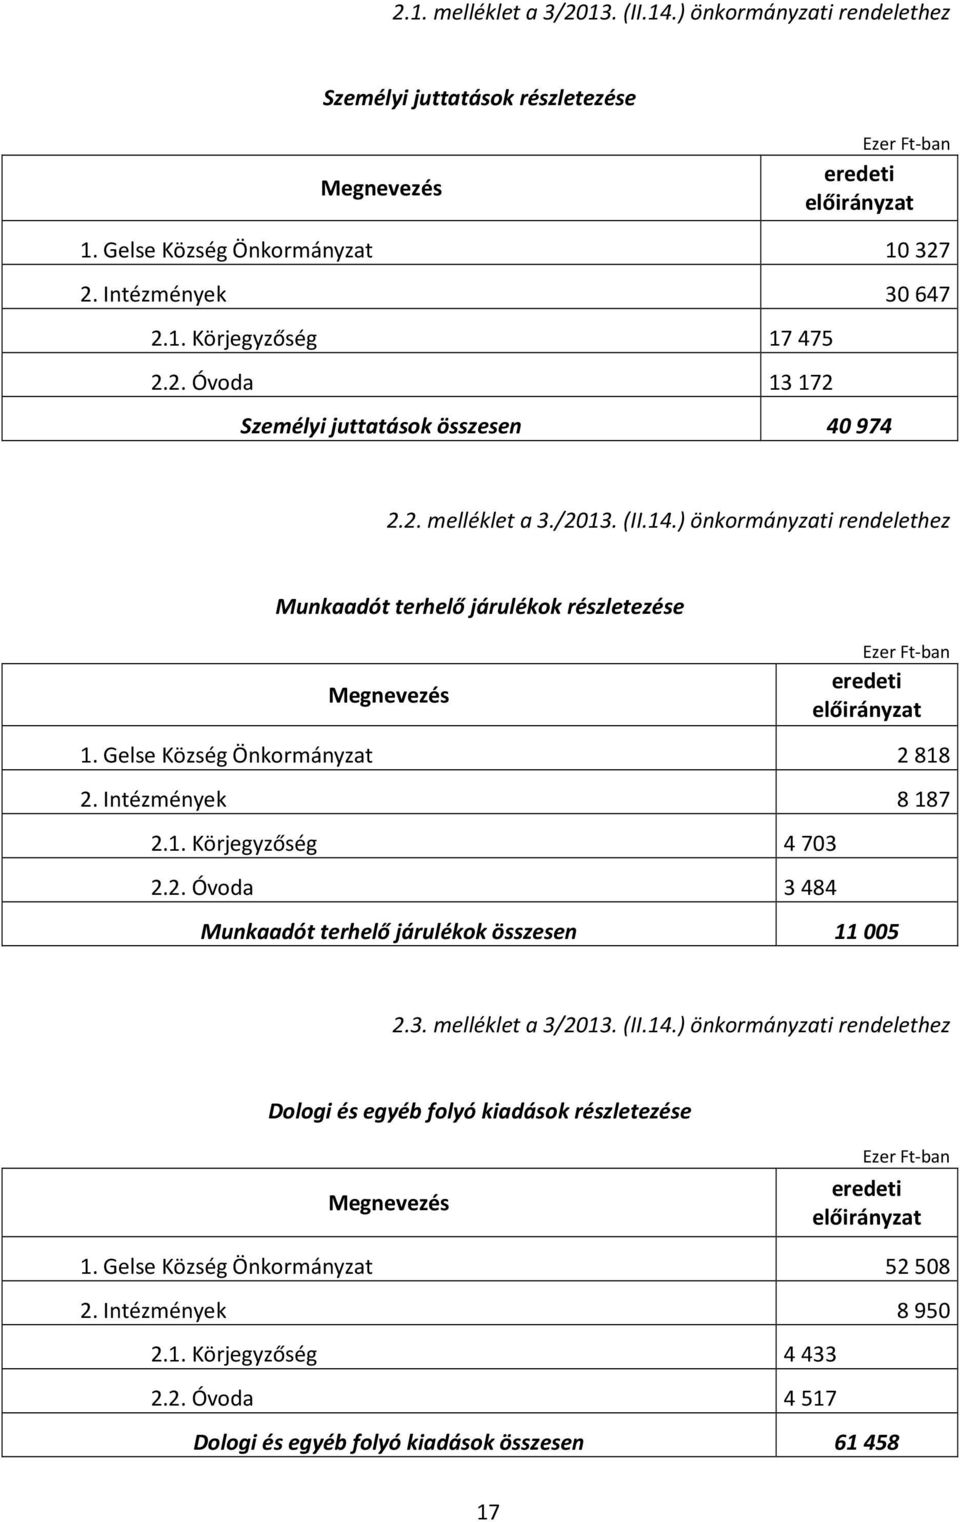 2. Óvoda 3 484 Munkaadót terhelő járulékok összesen 11 005 2.3. melléklet a 3/2013. (II.14.) önkormányzati rendelethez Dologi és egyéb folyó kiadások részletezése 1.